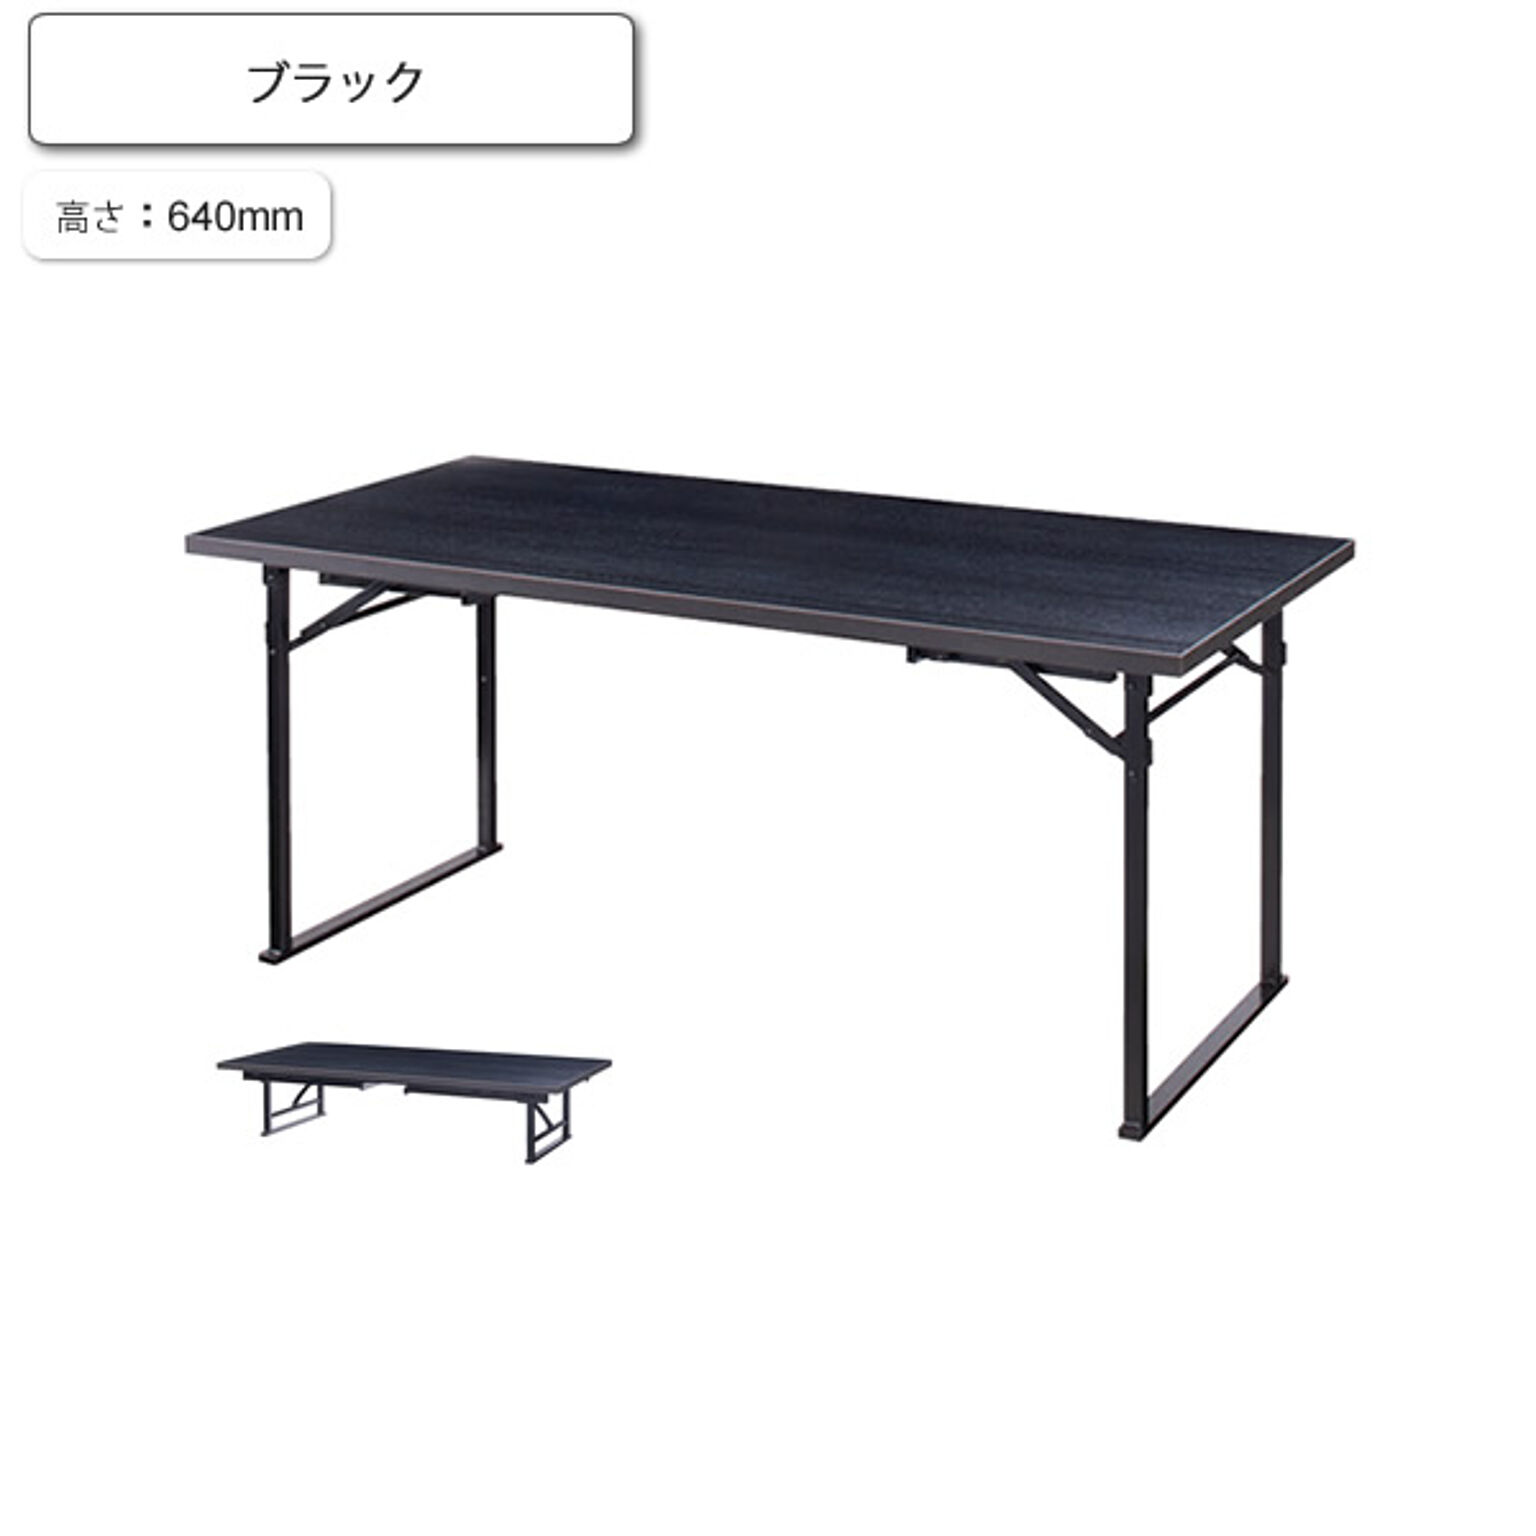 ダイニングテーブル 座卓 コンバーチブル H640 千歳 ブラック 業務用家具シリーズ JAPANESE（ジャパニーズ）  店舗 施設 コントラクト